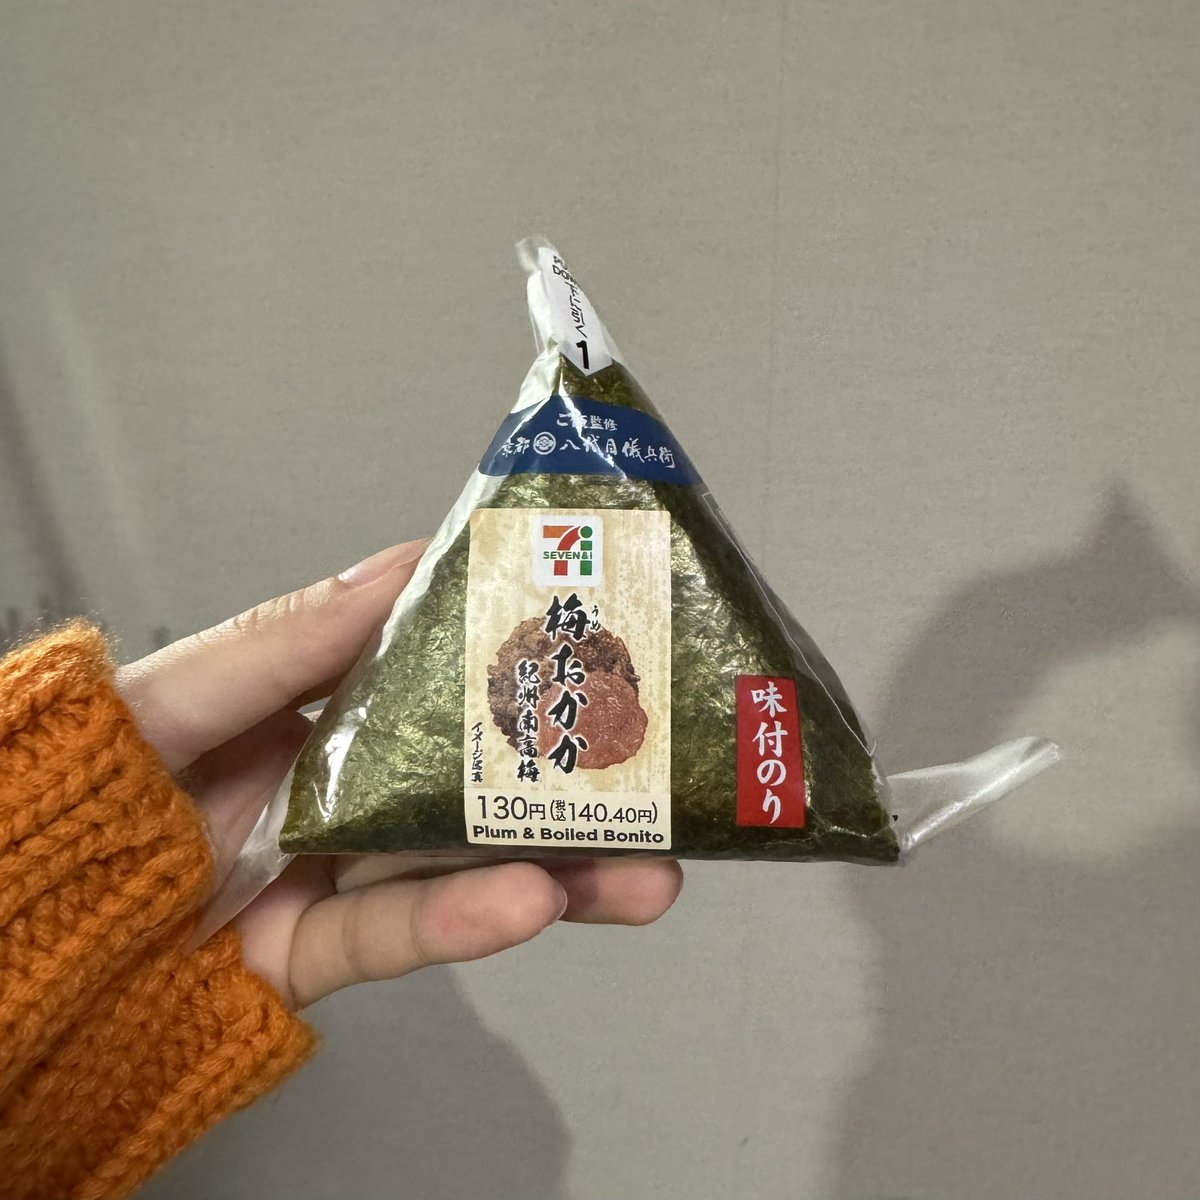 九州地方に滞在しているときは、このおにぎりが楽しみです🍙味付けのり🍙 長崎での撮影中もよく食べてた🍙 さ、今日も頑張りましょう〜！